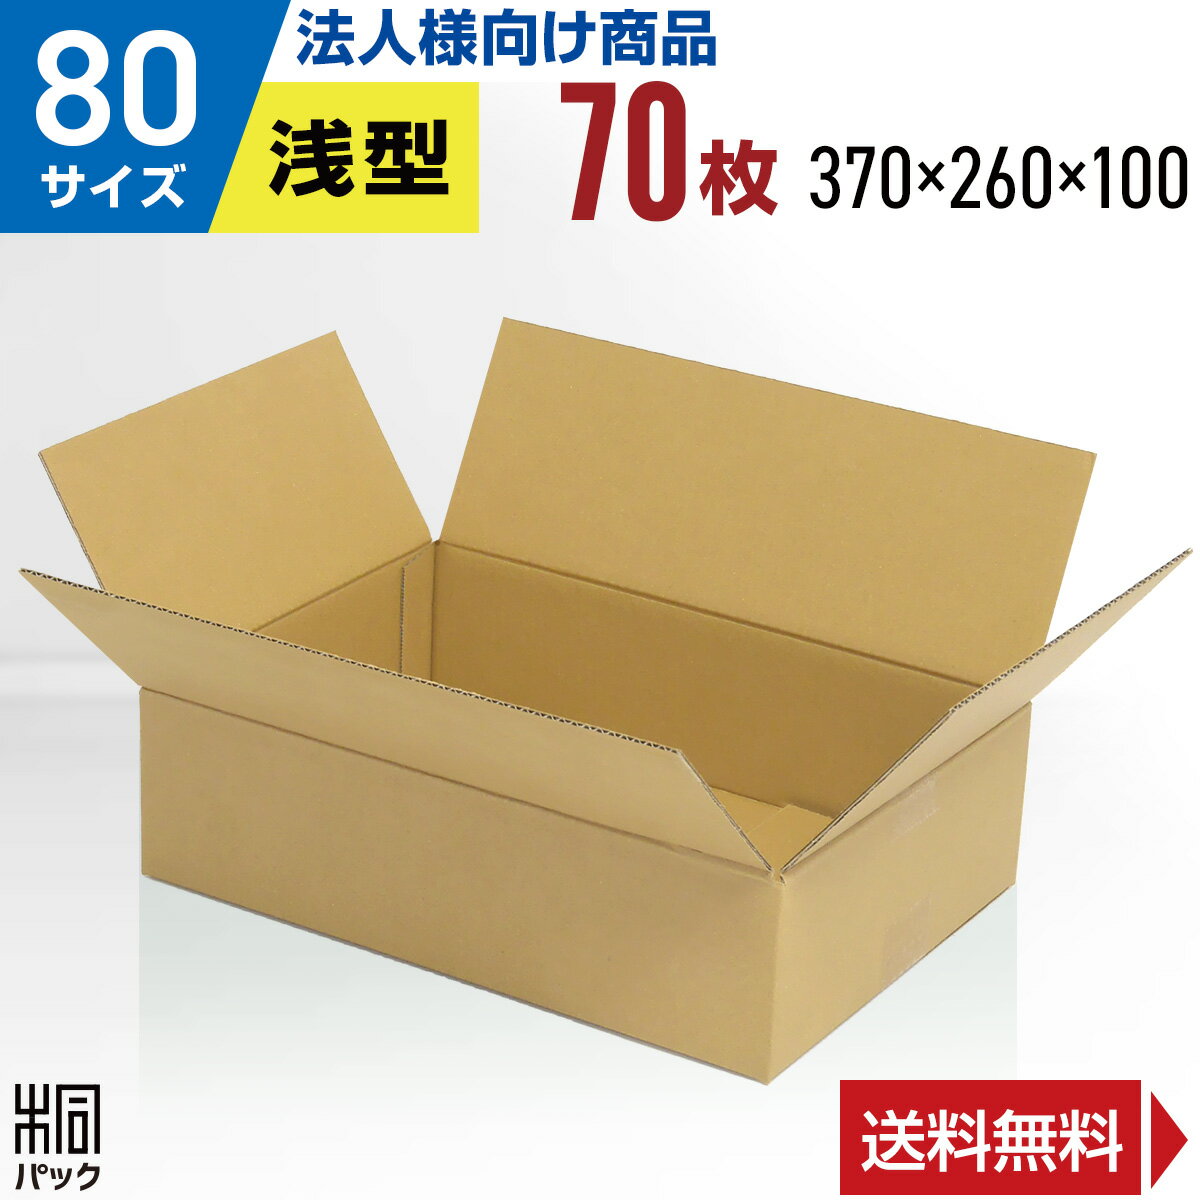 【法人特価】段ボール 箱 80サイズ 70枚 (3mm厚 3